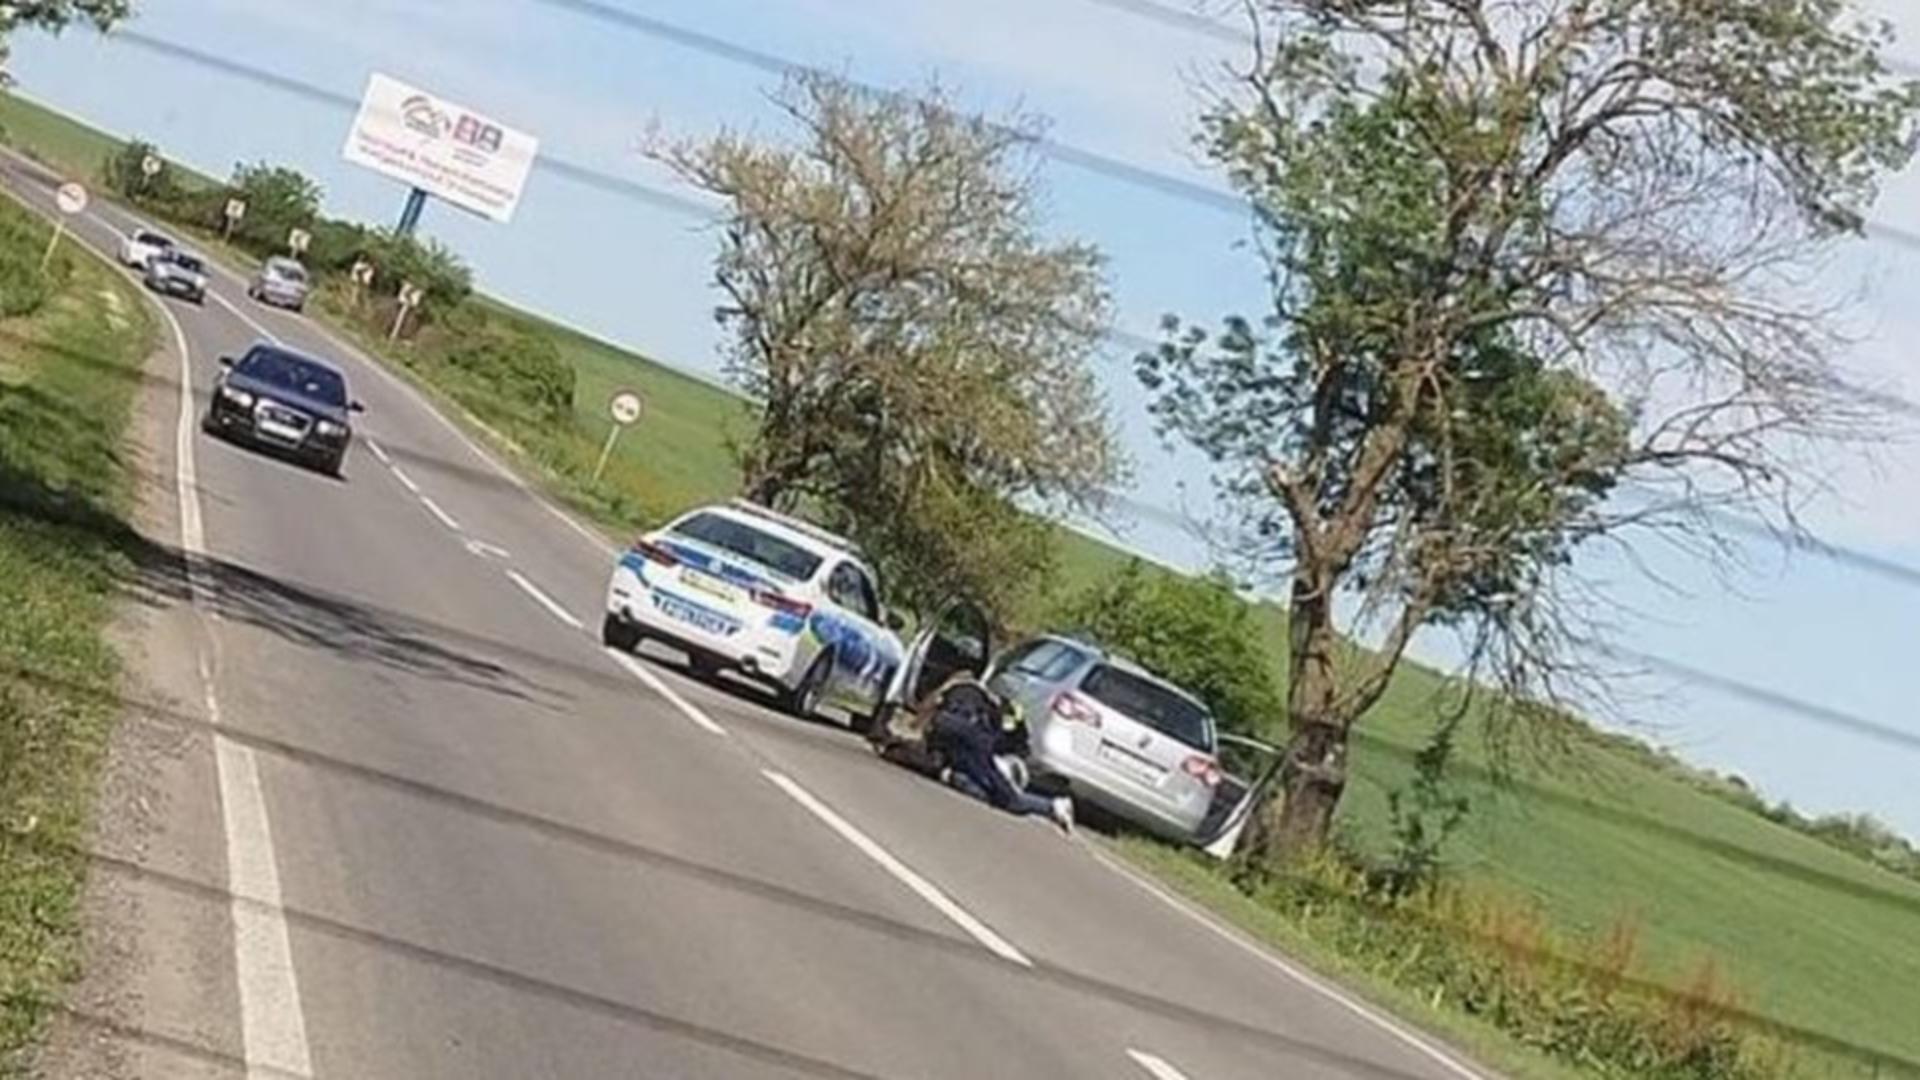 Șofer pus la pământ și încătușat, în trafic. Scenă ȘOCANTĂ pe o șosea dintre Arad și Timișoara – FOTO